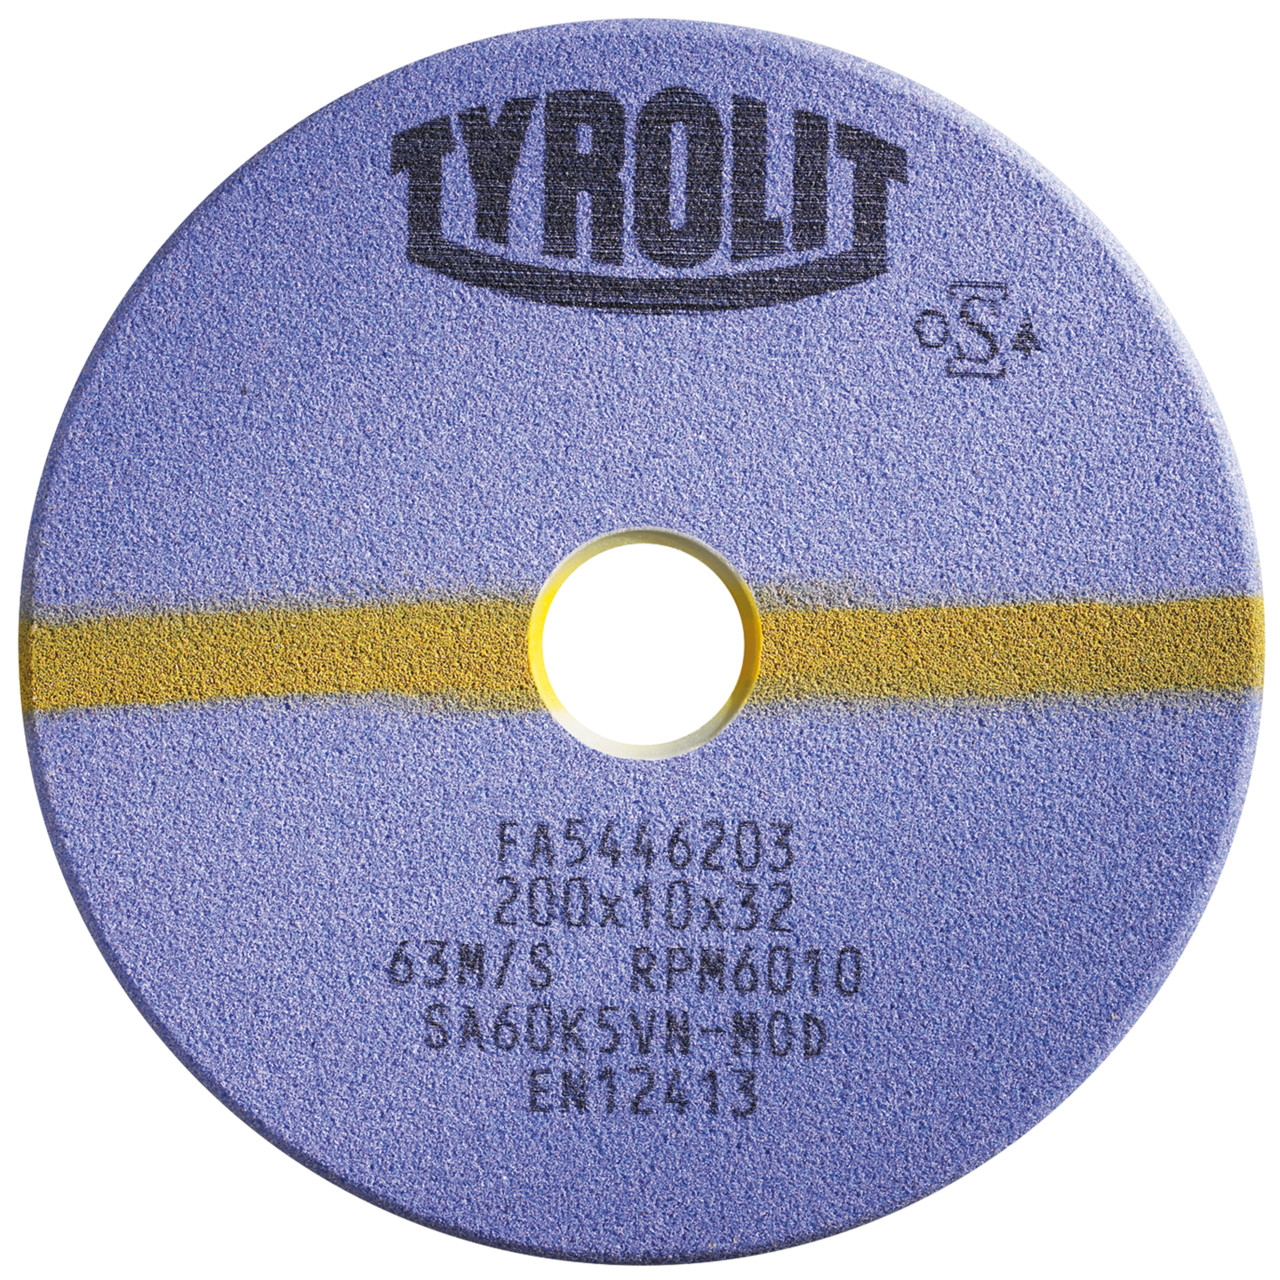 TYROLIT Schleifwerkzeuge für Sägeschärfautomaten DxTxH 150x4x20 Für Kreissägen und stellitierte Band- und Gattersägen, Form: 1C, Art. 19117